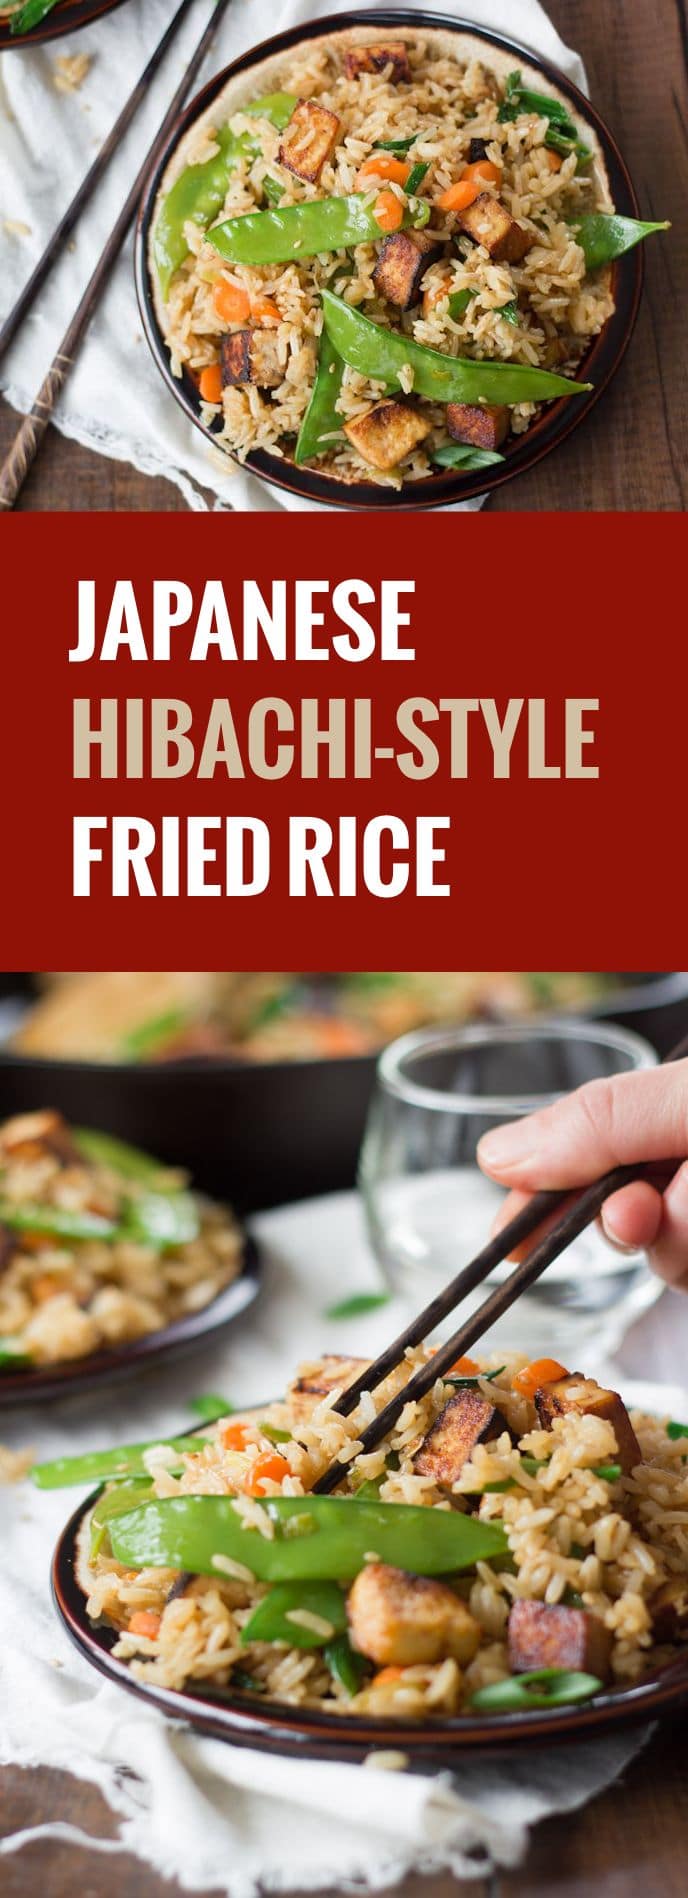 Hibachi-Style Japanese Fried Rice - Connoisseurus Veg